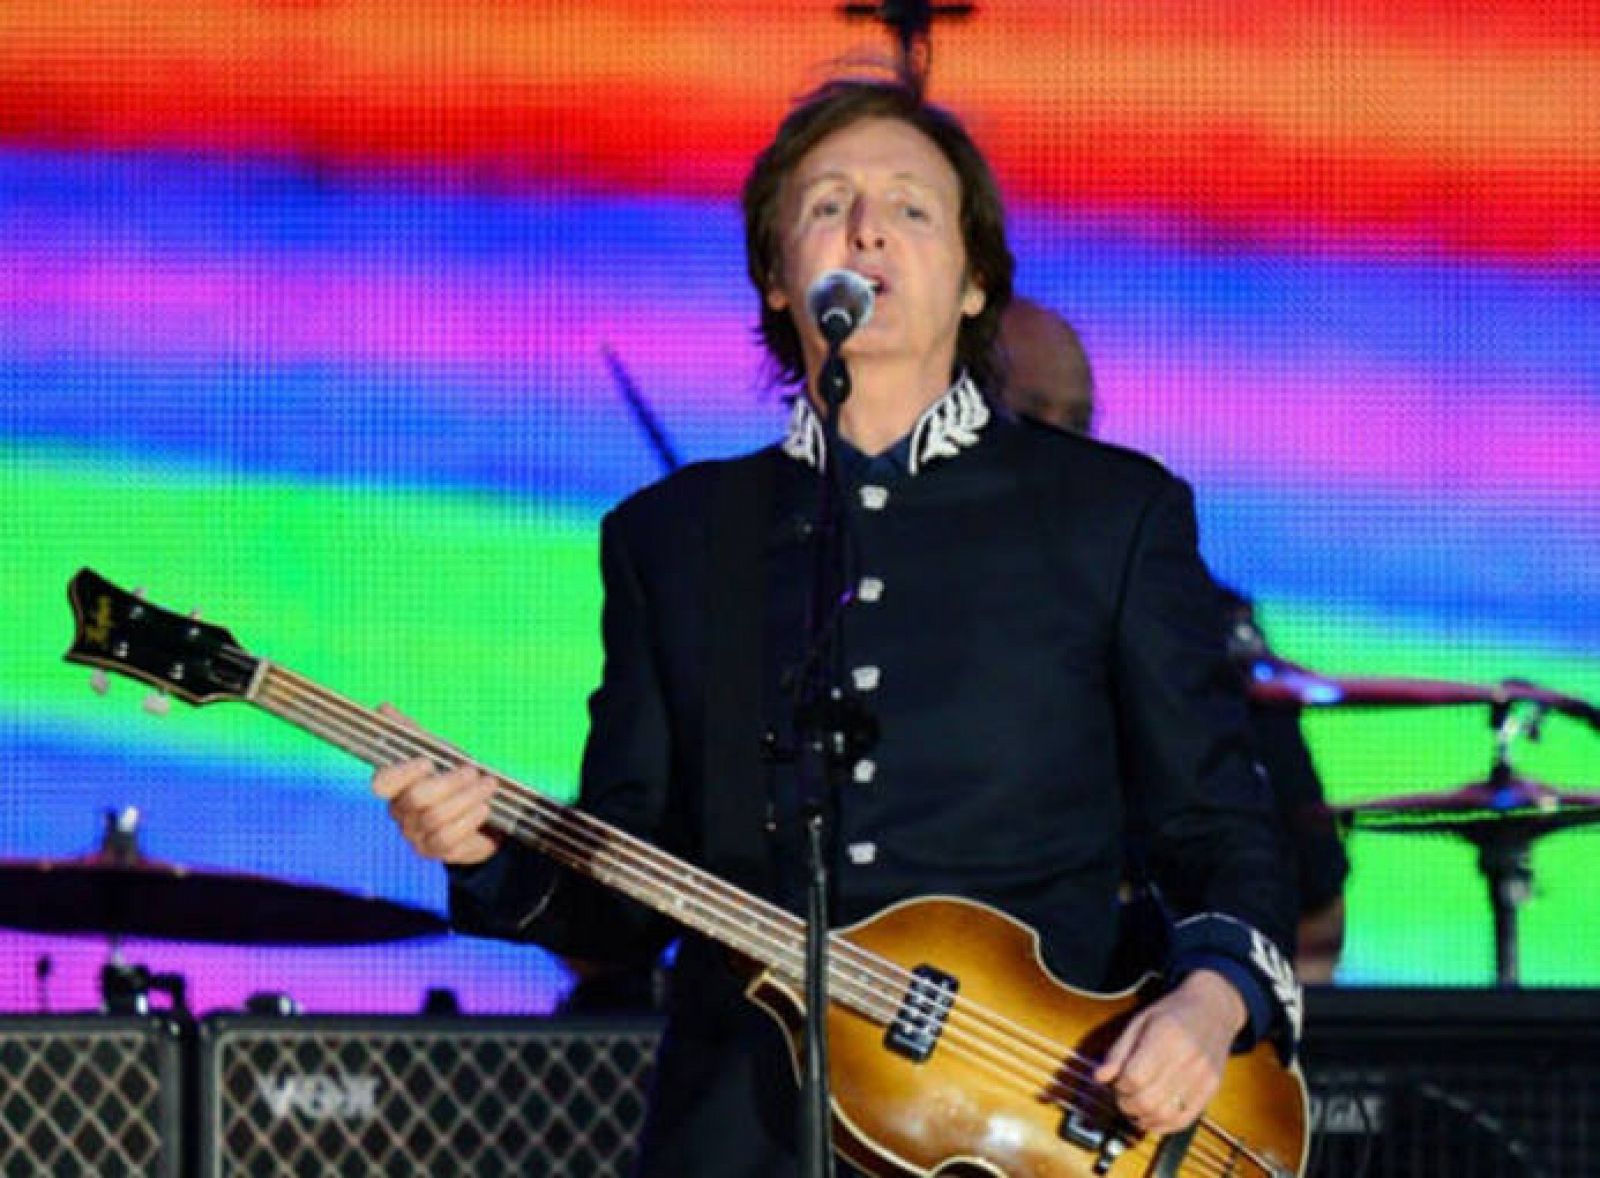 McCartney cree que Lennon nunca hubiera escrito 'Imagine' sin la influencia de Yoko Ono.